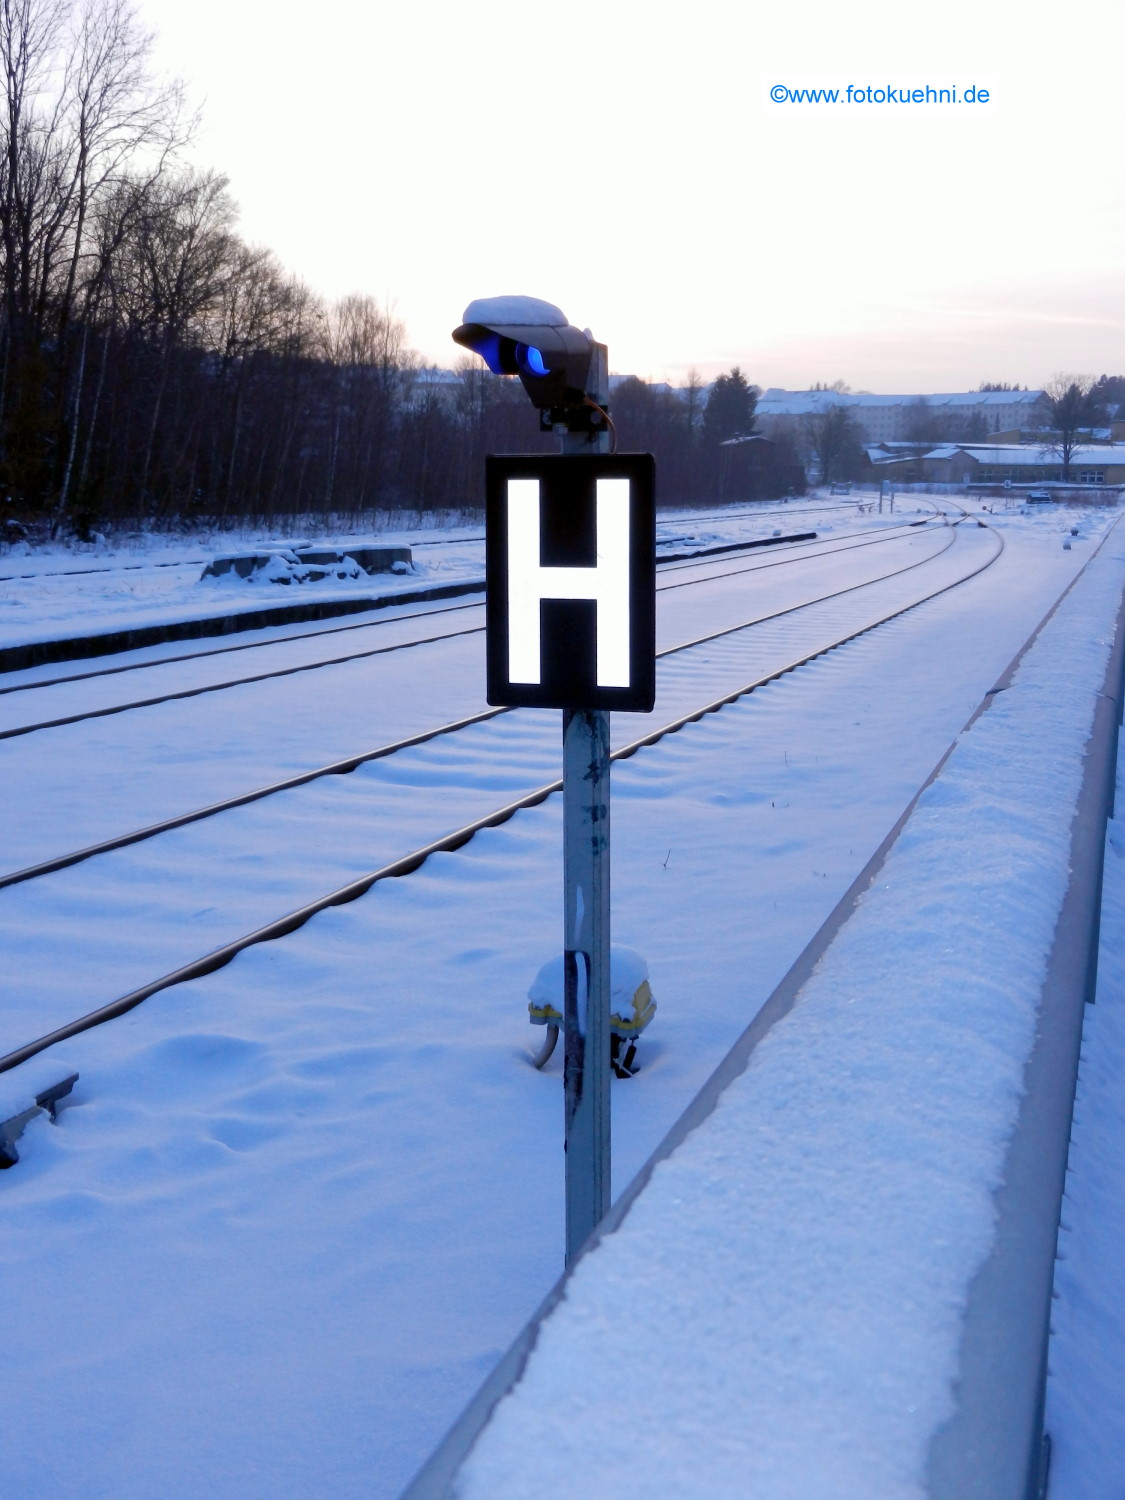 Haltetafel mit blauem Licht am Bahnhof in Sebnitz - 26.01.2013